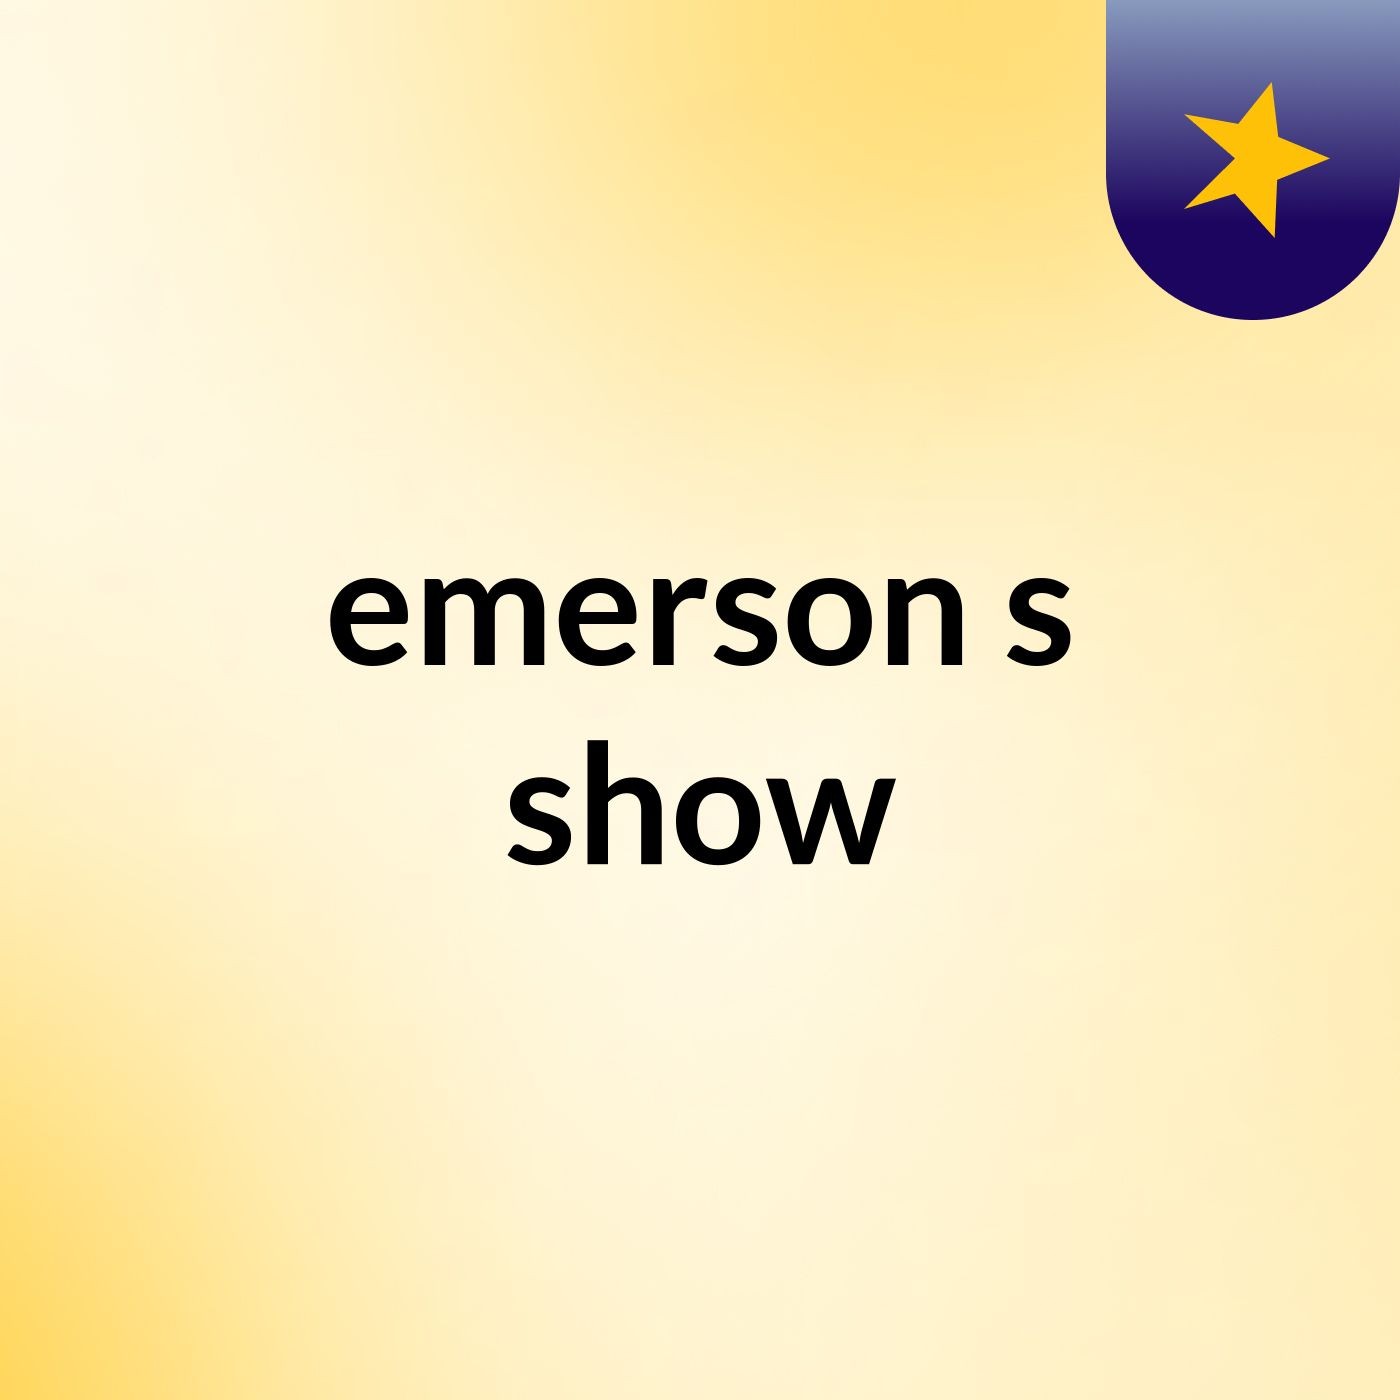 emerson's show